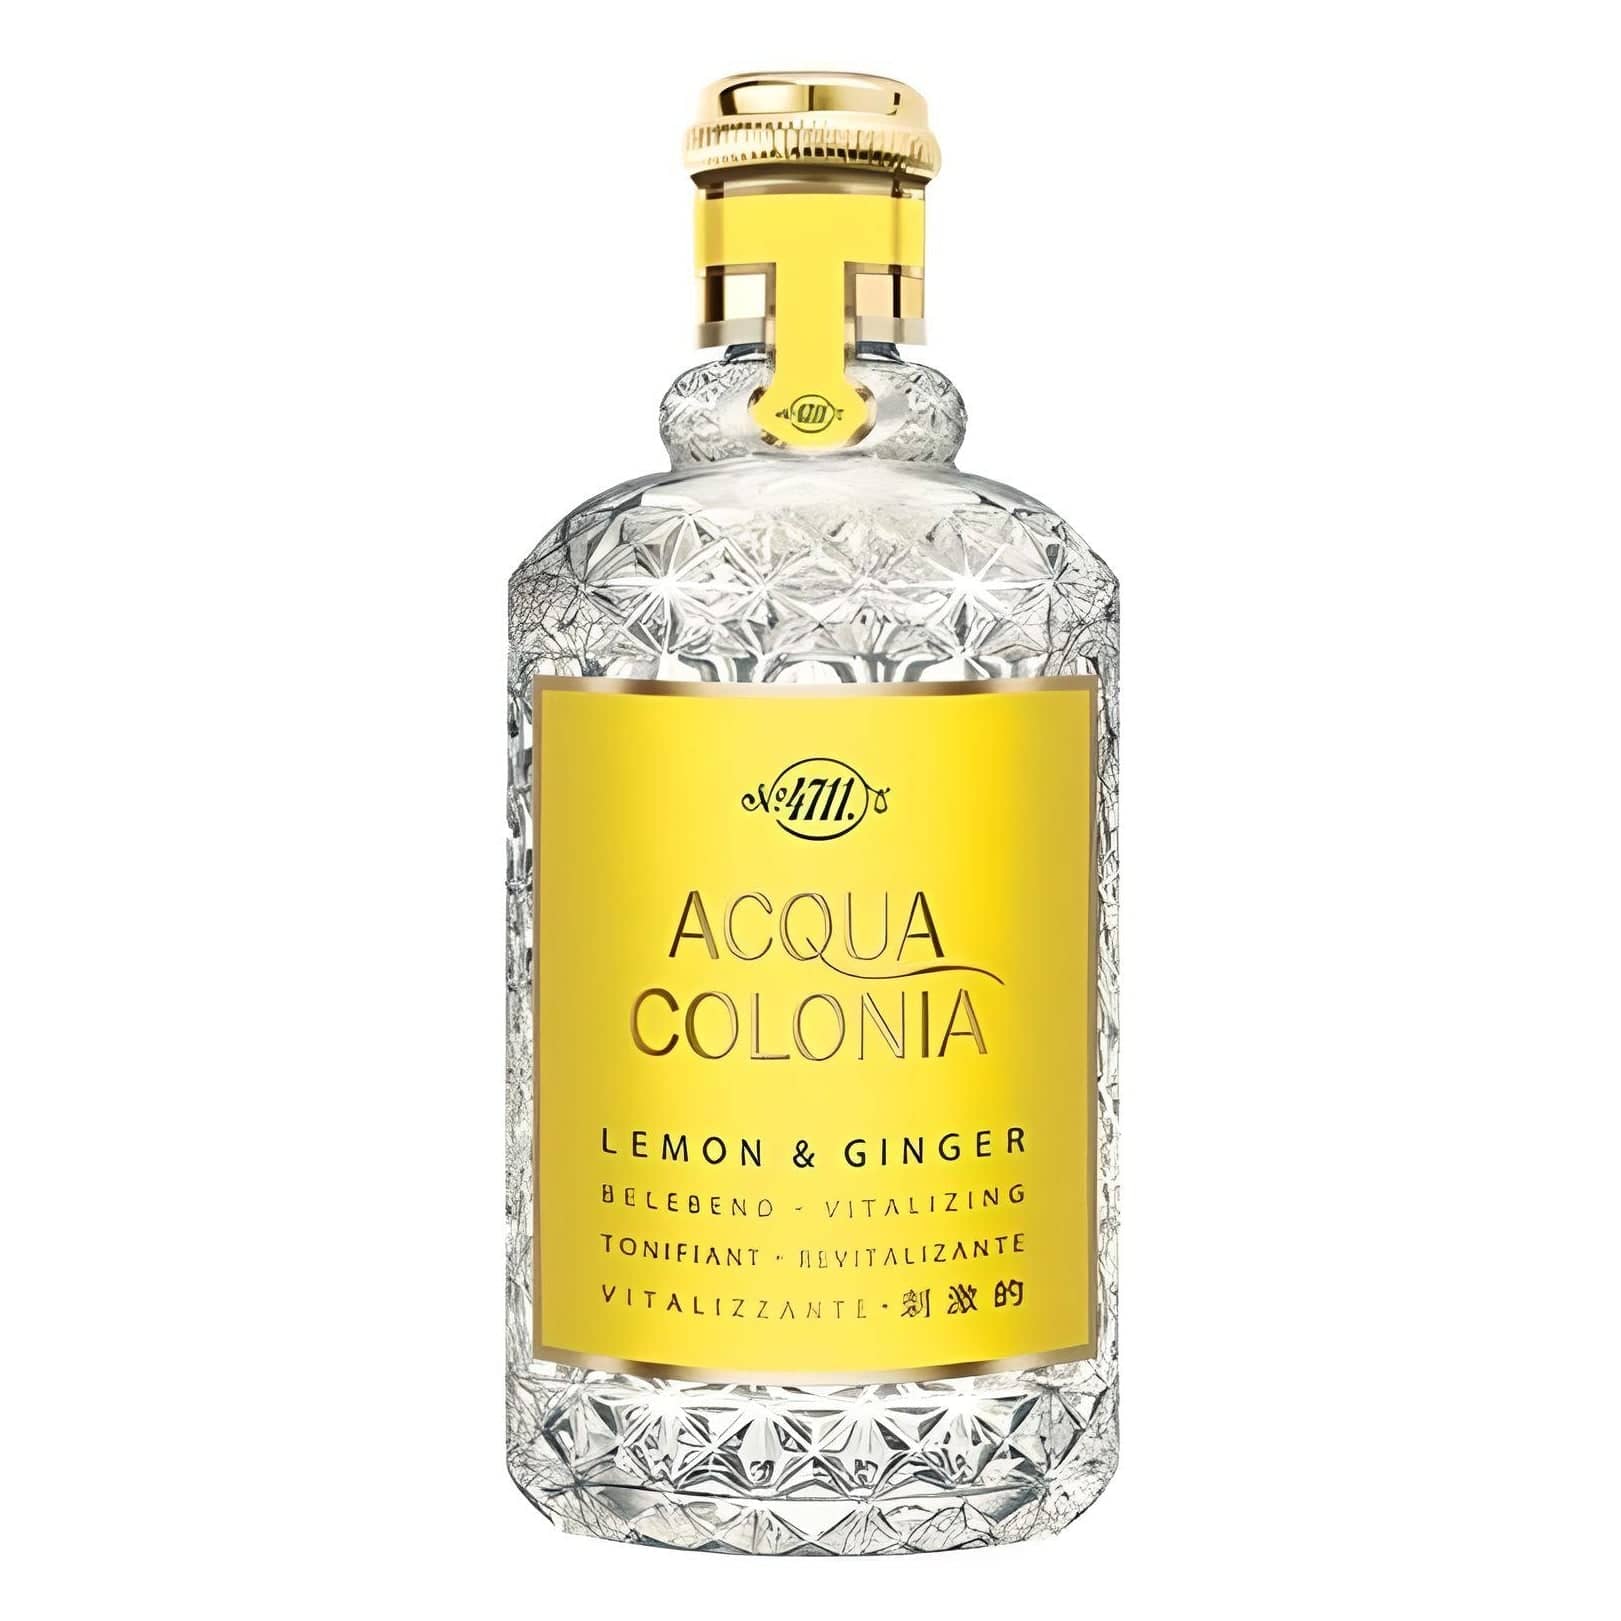 ACQUA COLONIA Lemon & Ginger Eau de Cologne Eau de Cologne 4711   